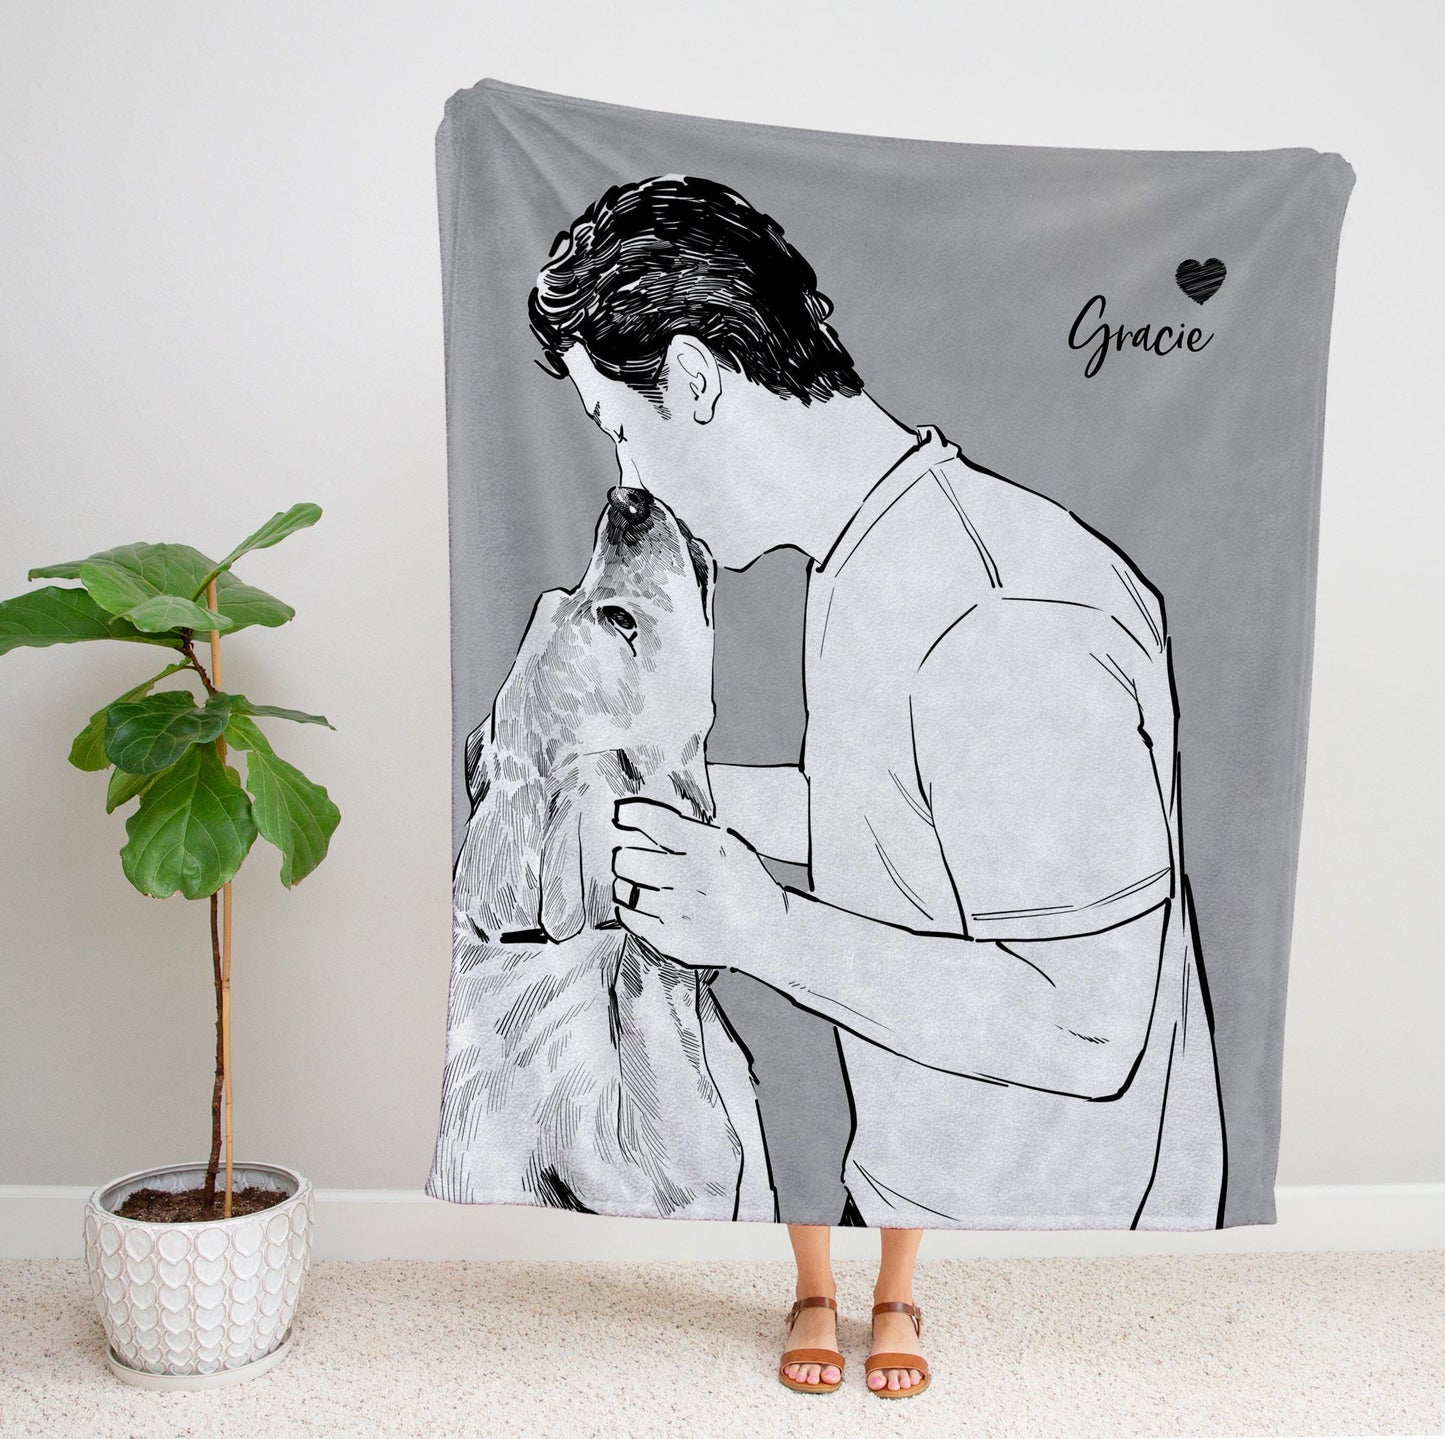 Custom Photo Fleece Blanket - Pet Design